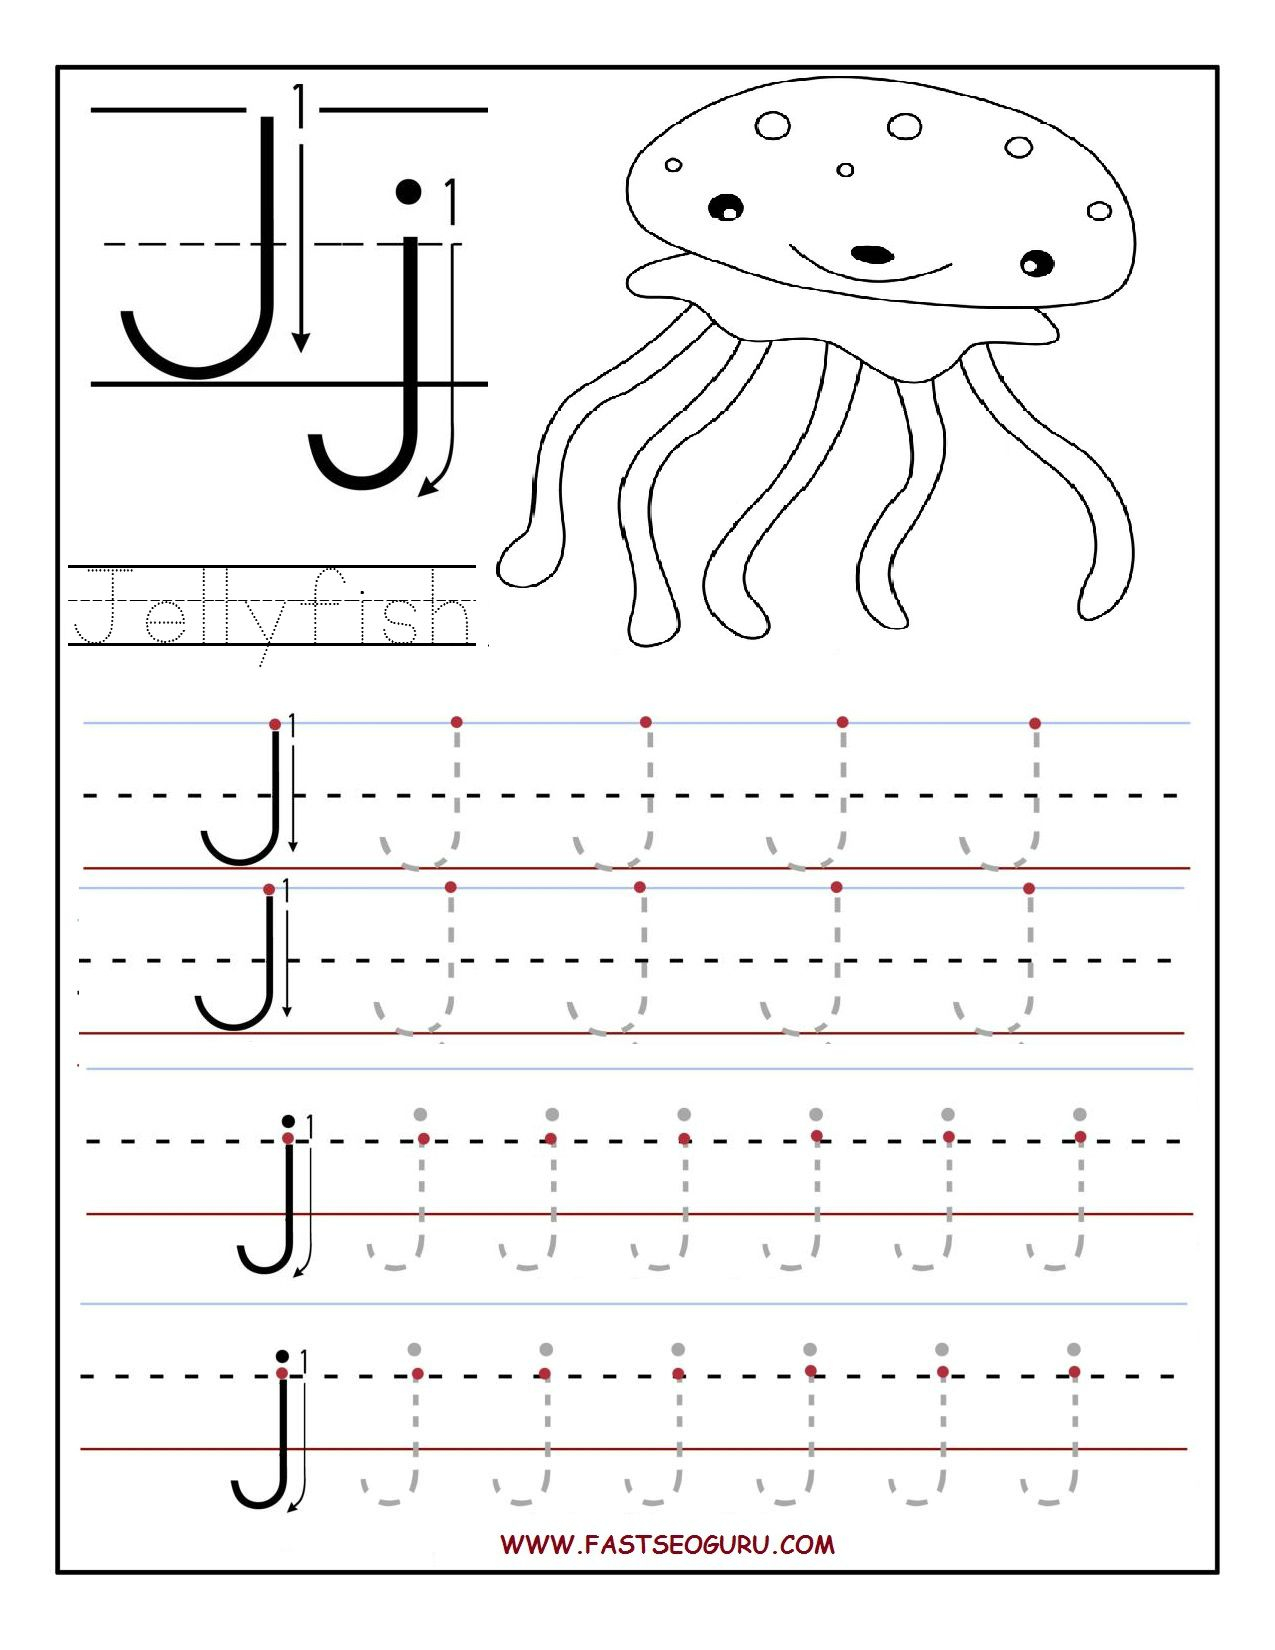 Printable Letter J Tracing Worksheets For Preschool inside Letter J Tracing Sheet